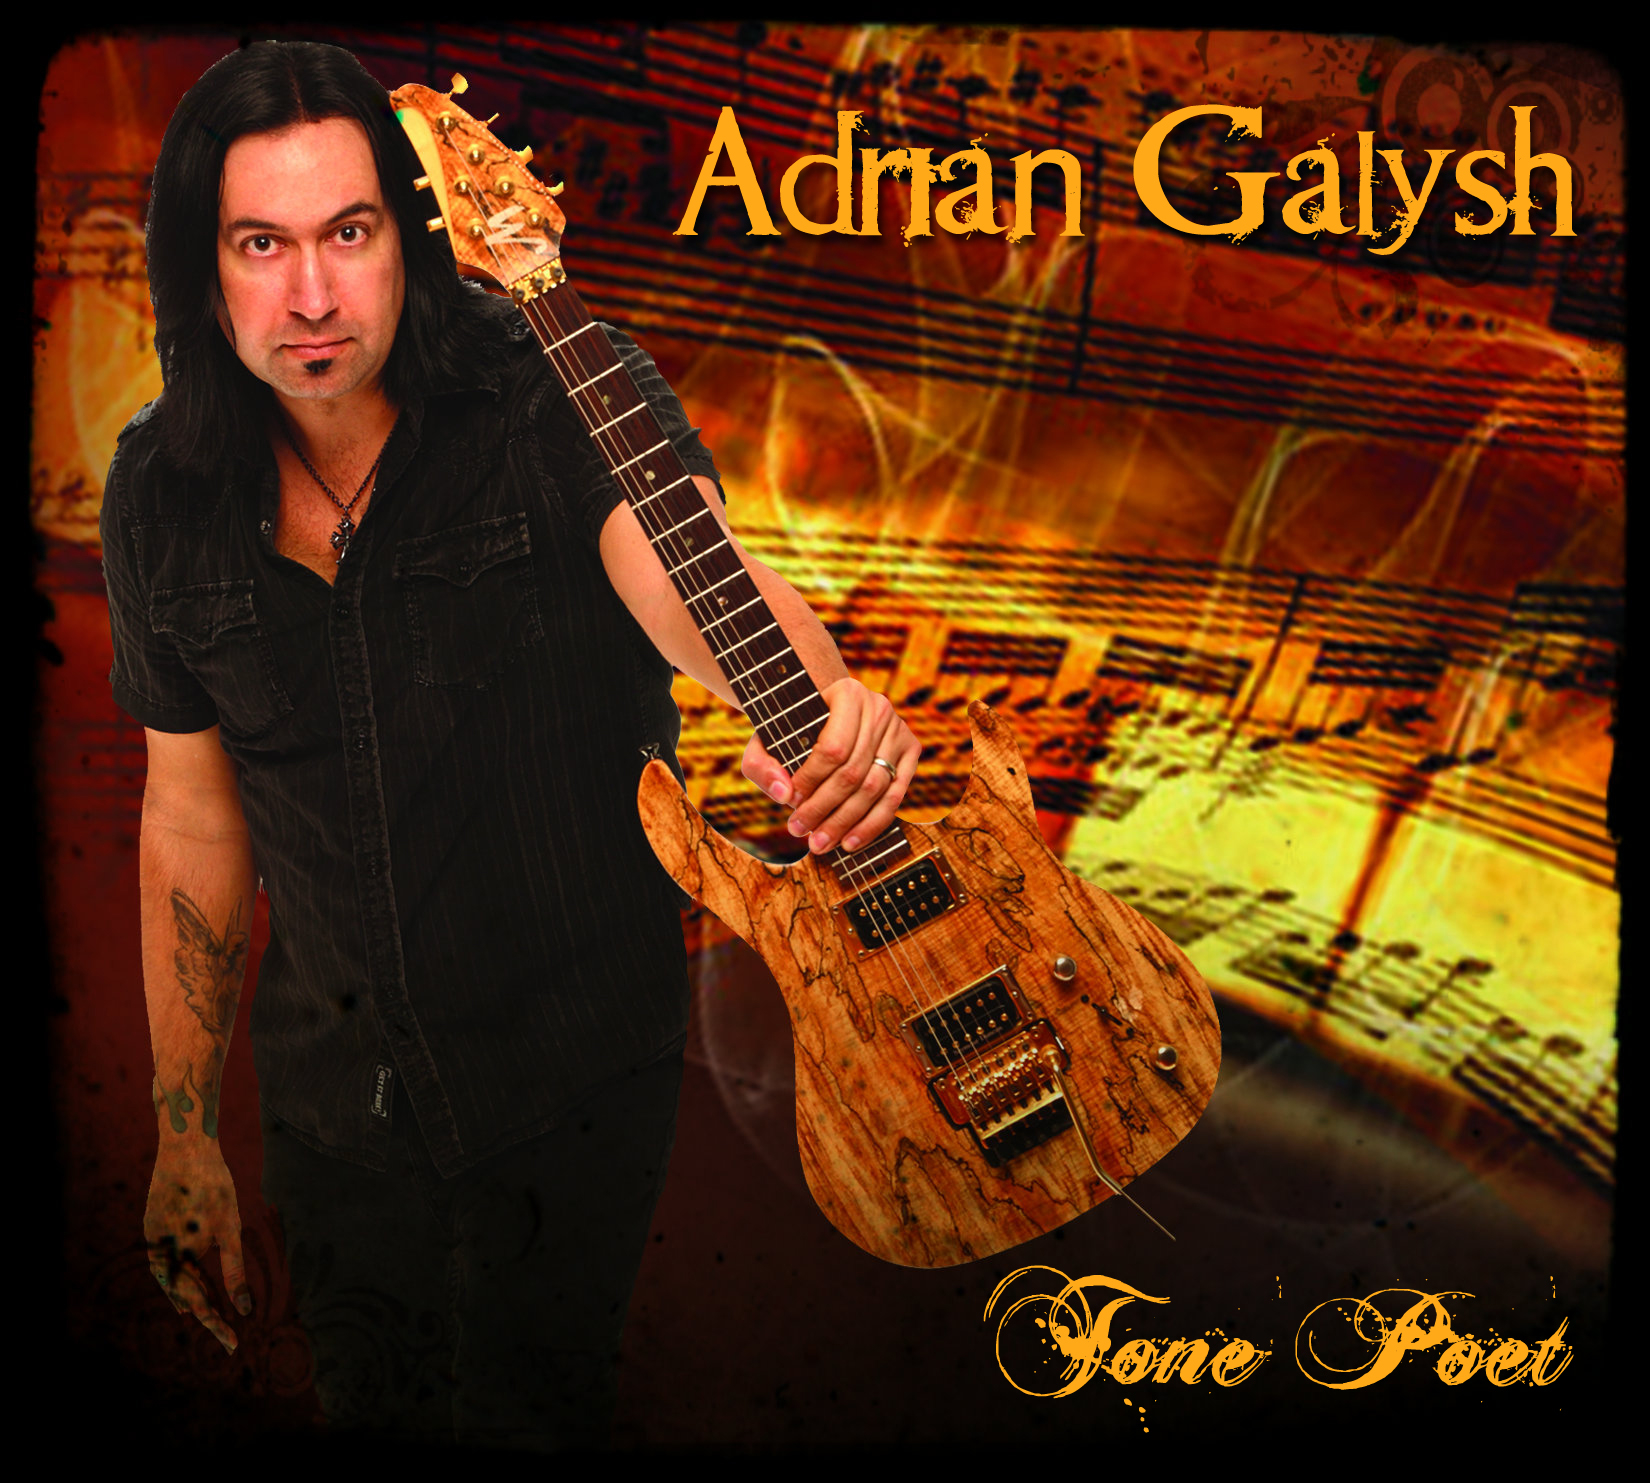 Adrian Galysh Releases New Album!